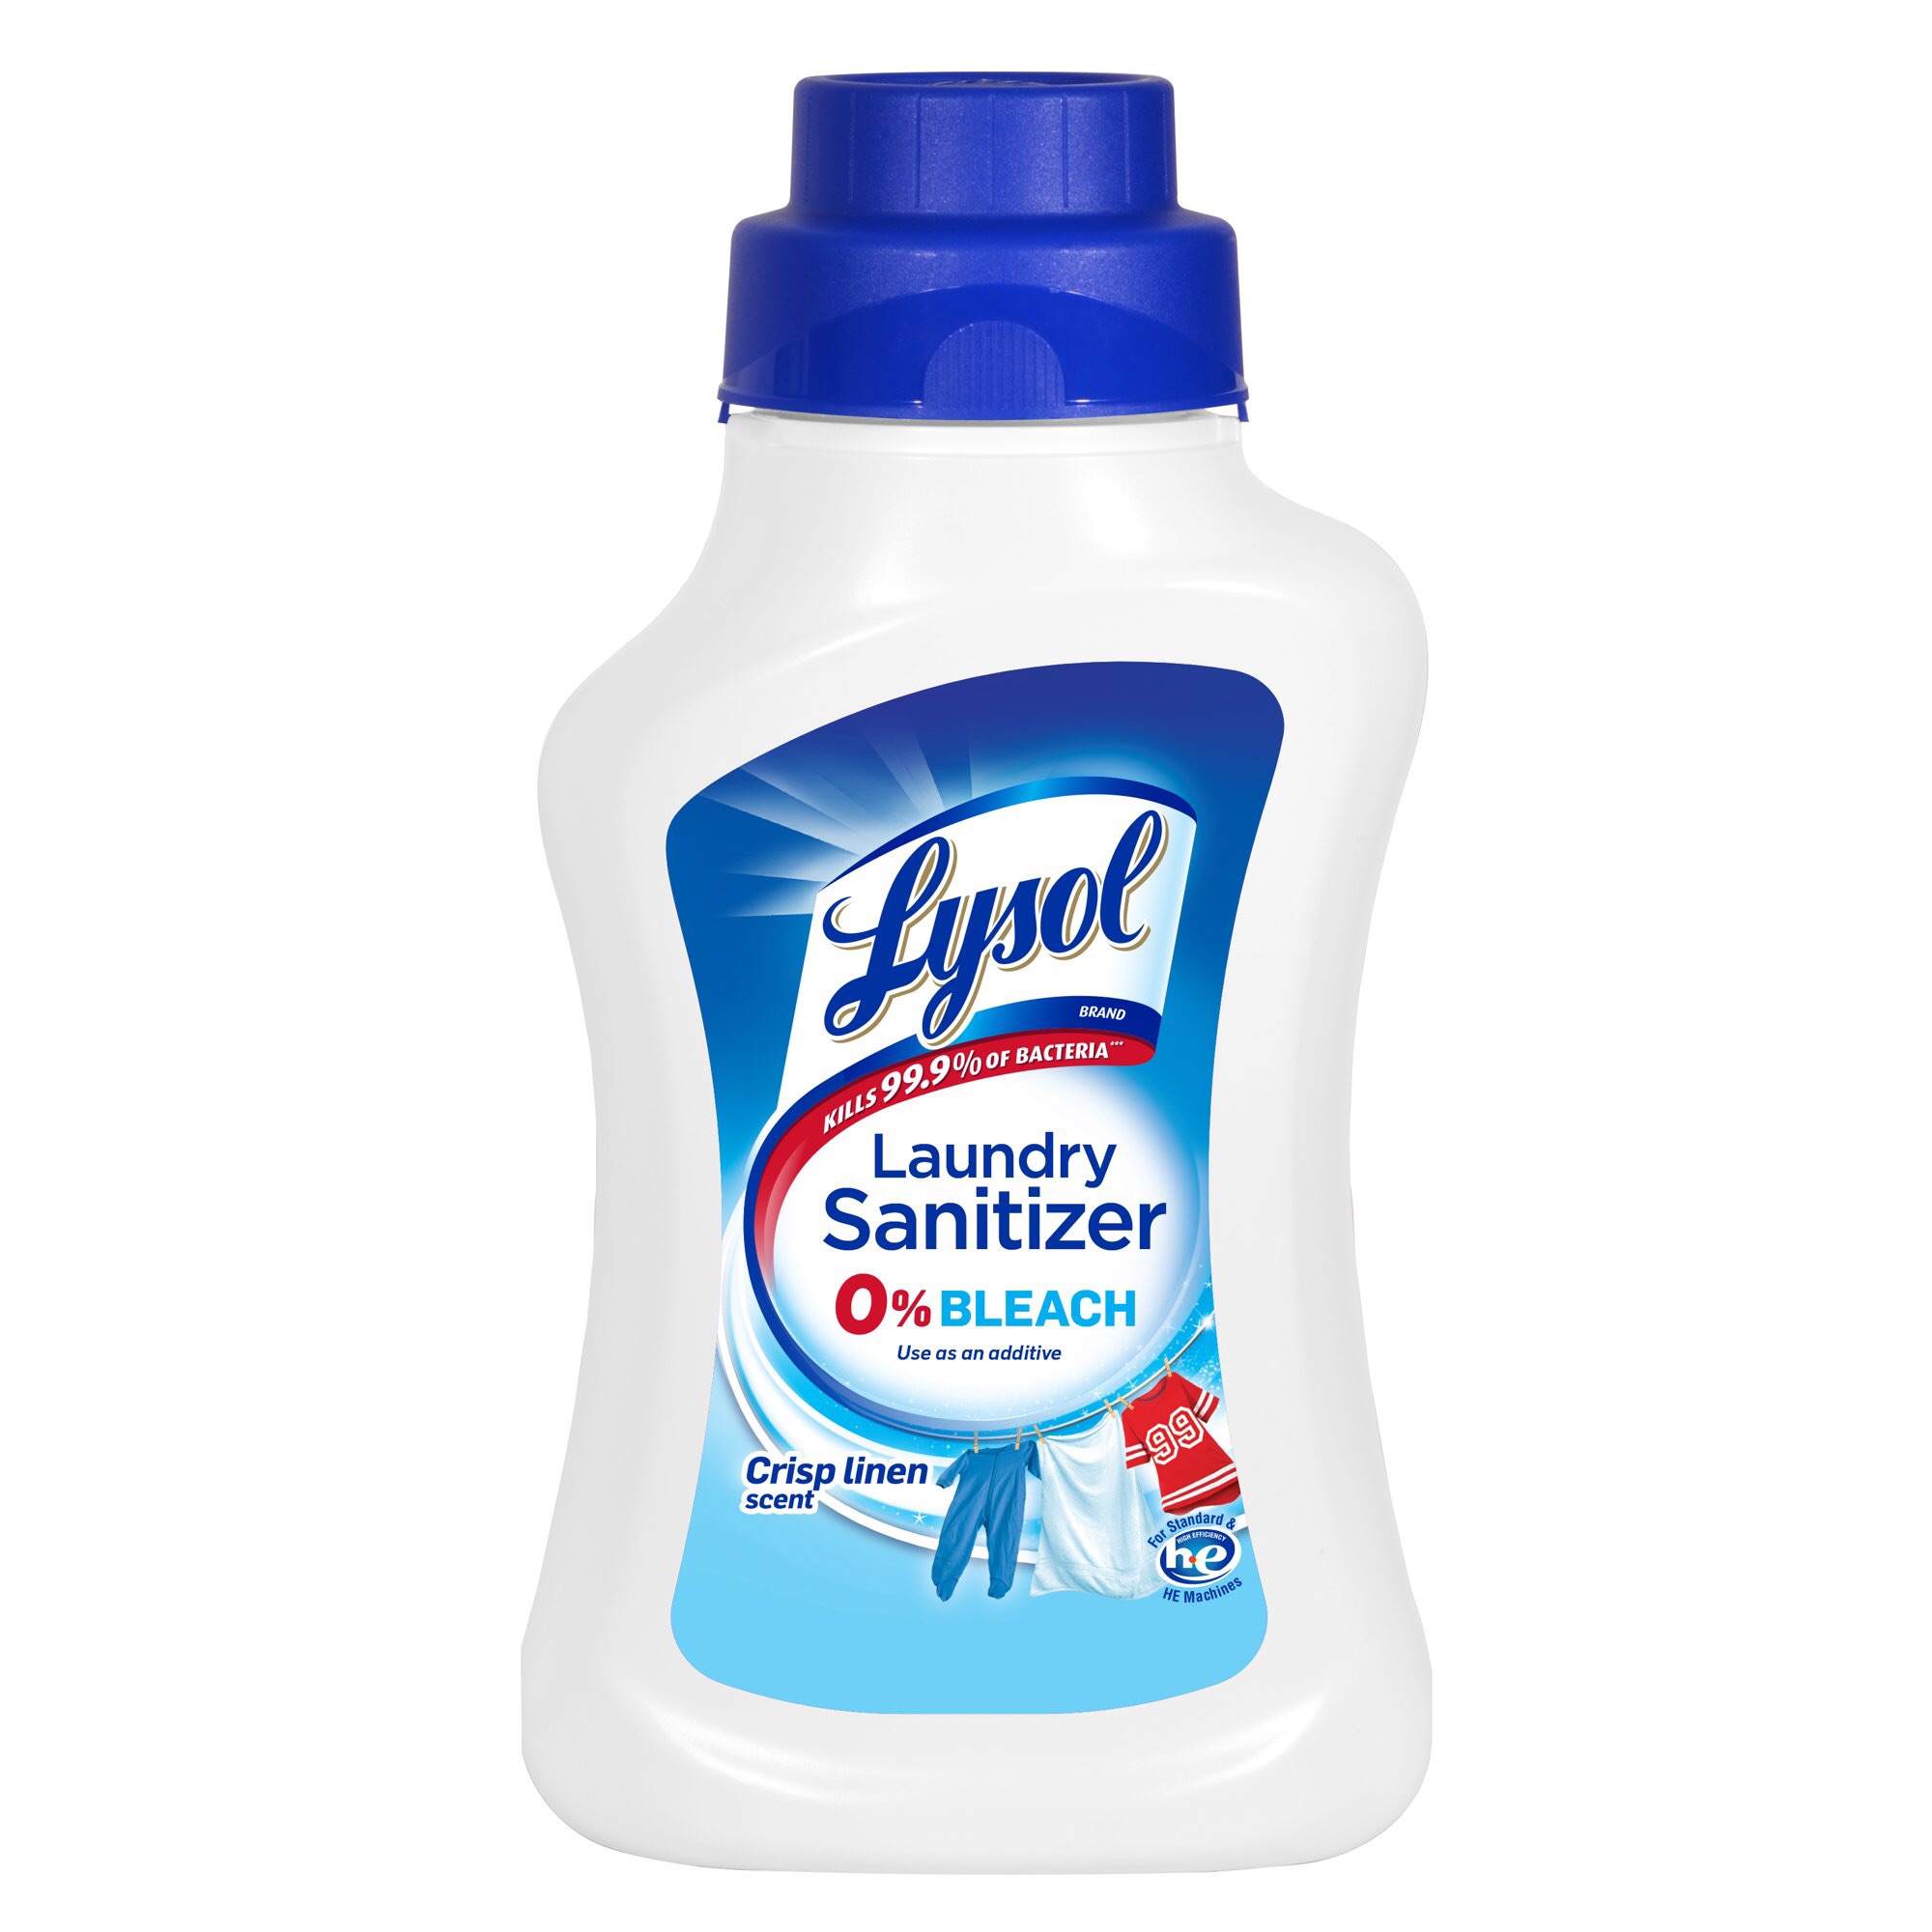 Lysol Laundry Sanitizer, Crisp Linen, 41 Oz, Eliminates Odors and Kills Bacteria - Walmart.com - Walmart.com消毒剂